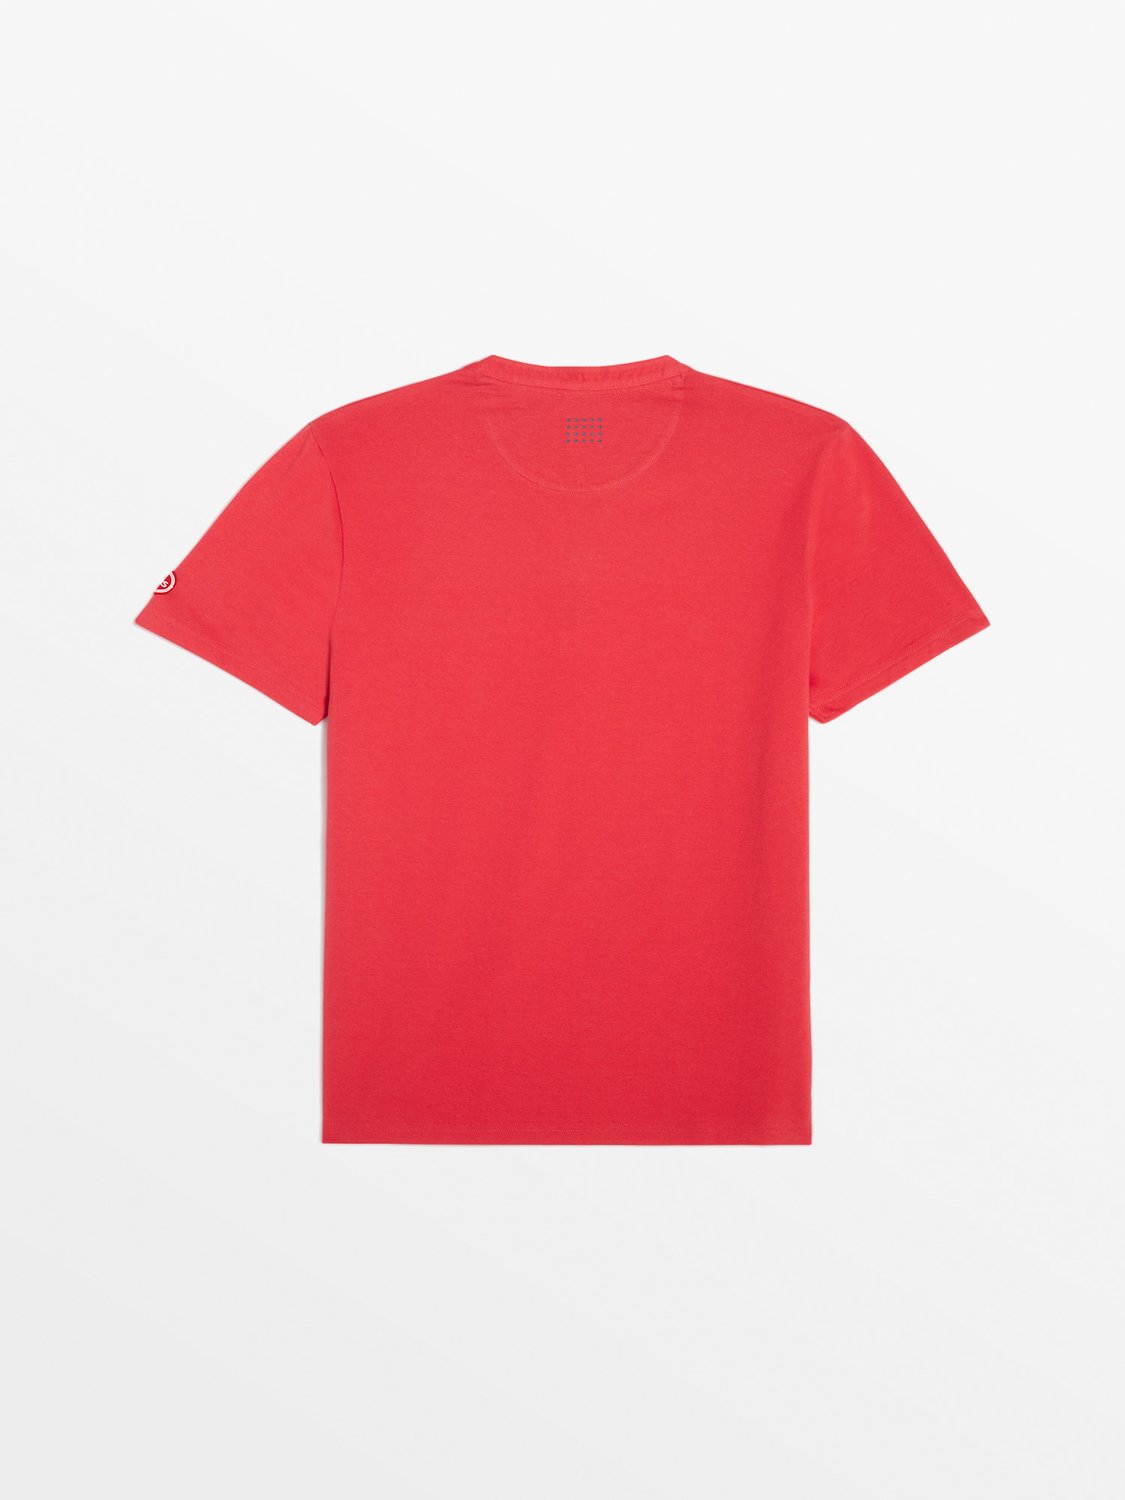 Tee Shirt Homme Coton Biologique Rouge